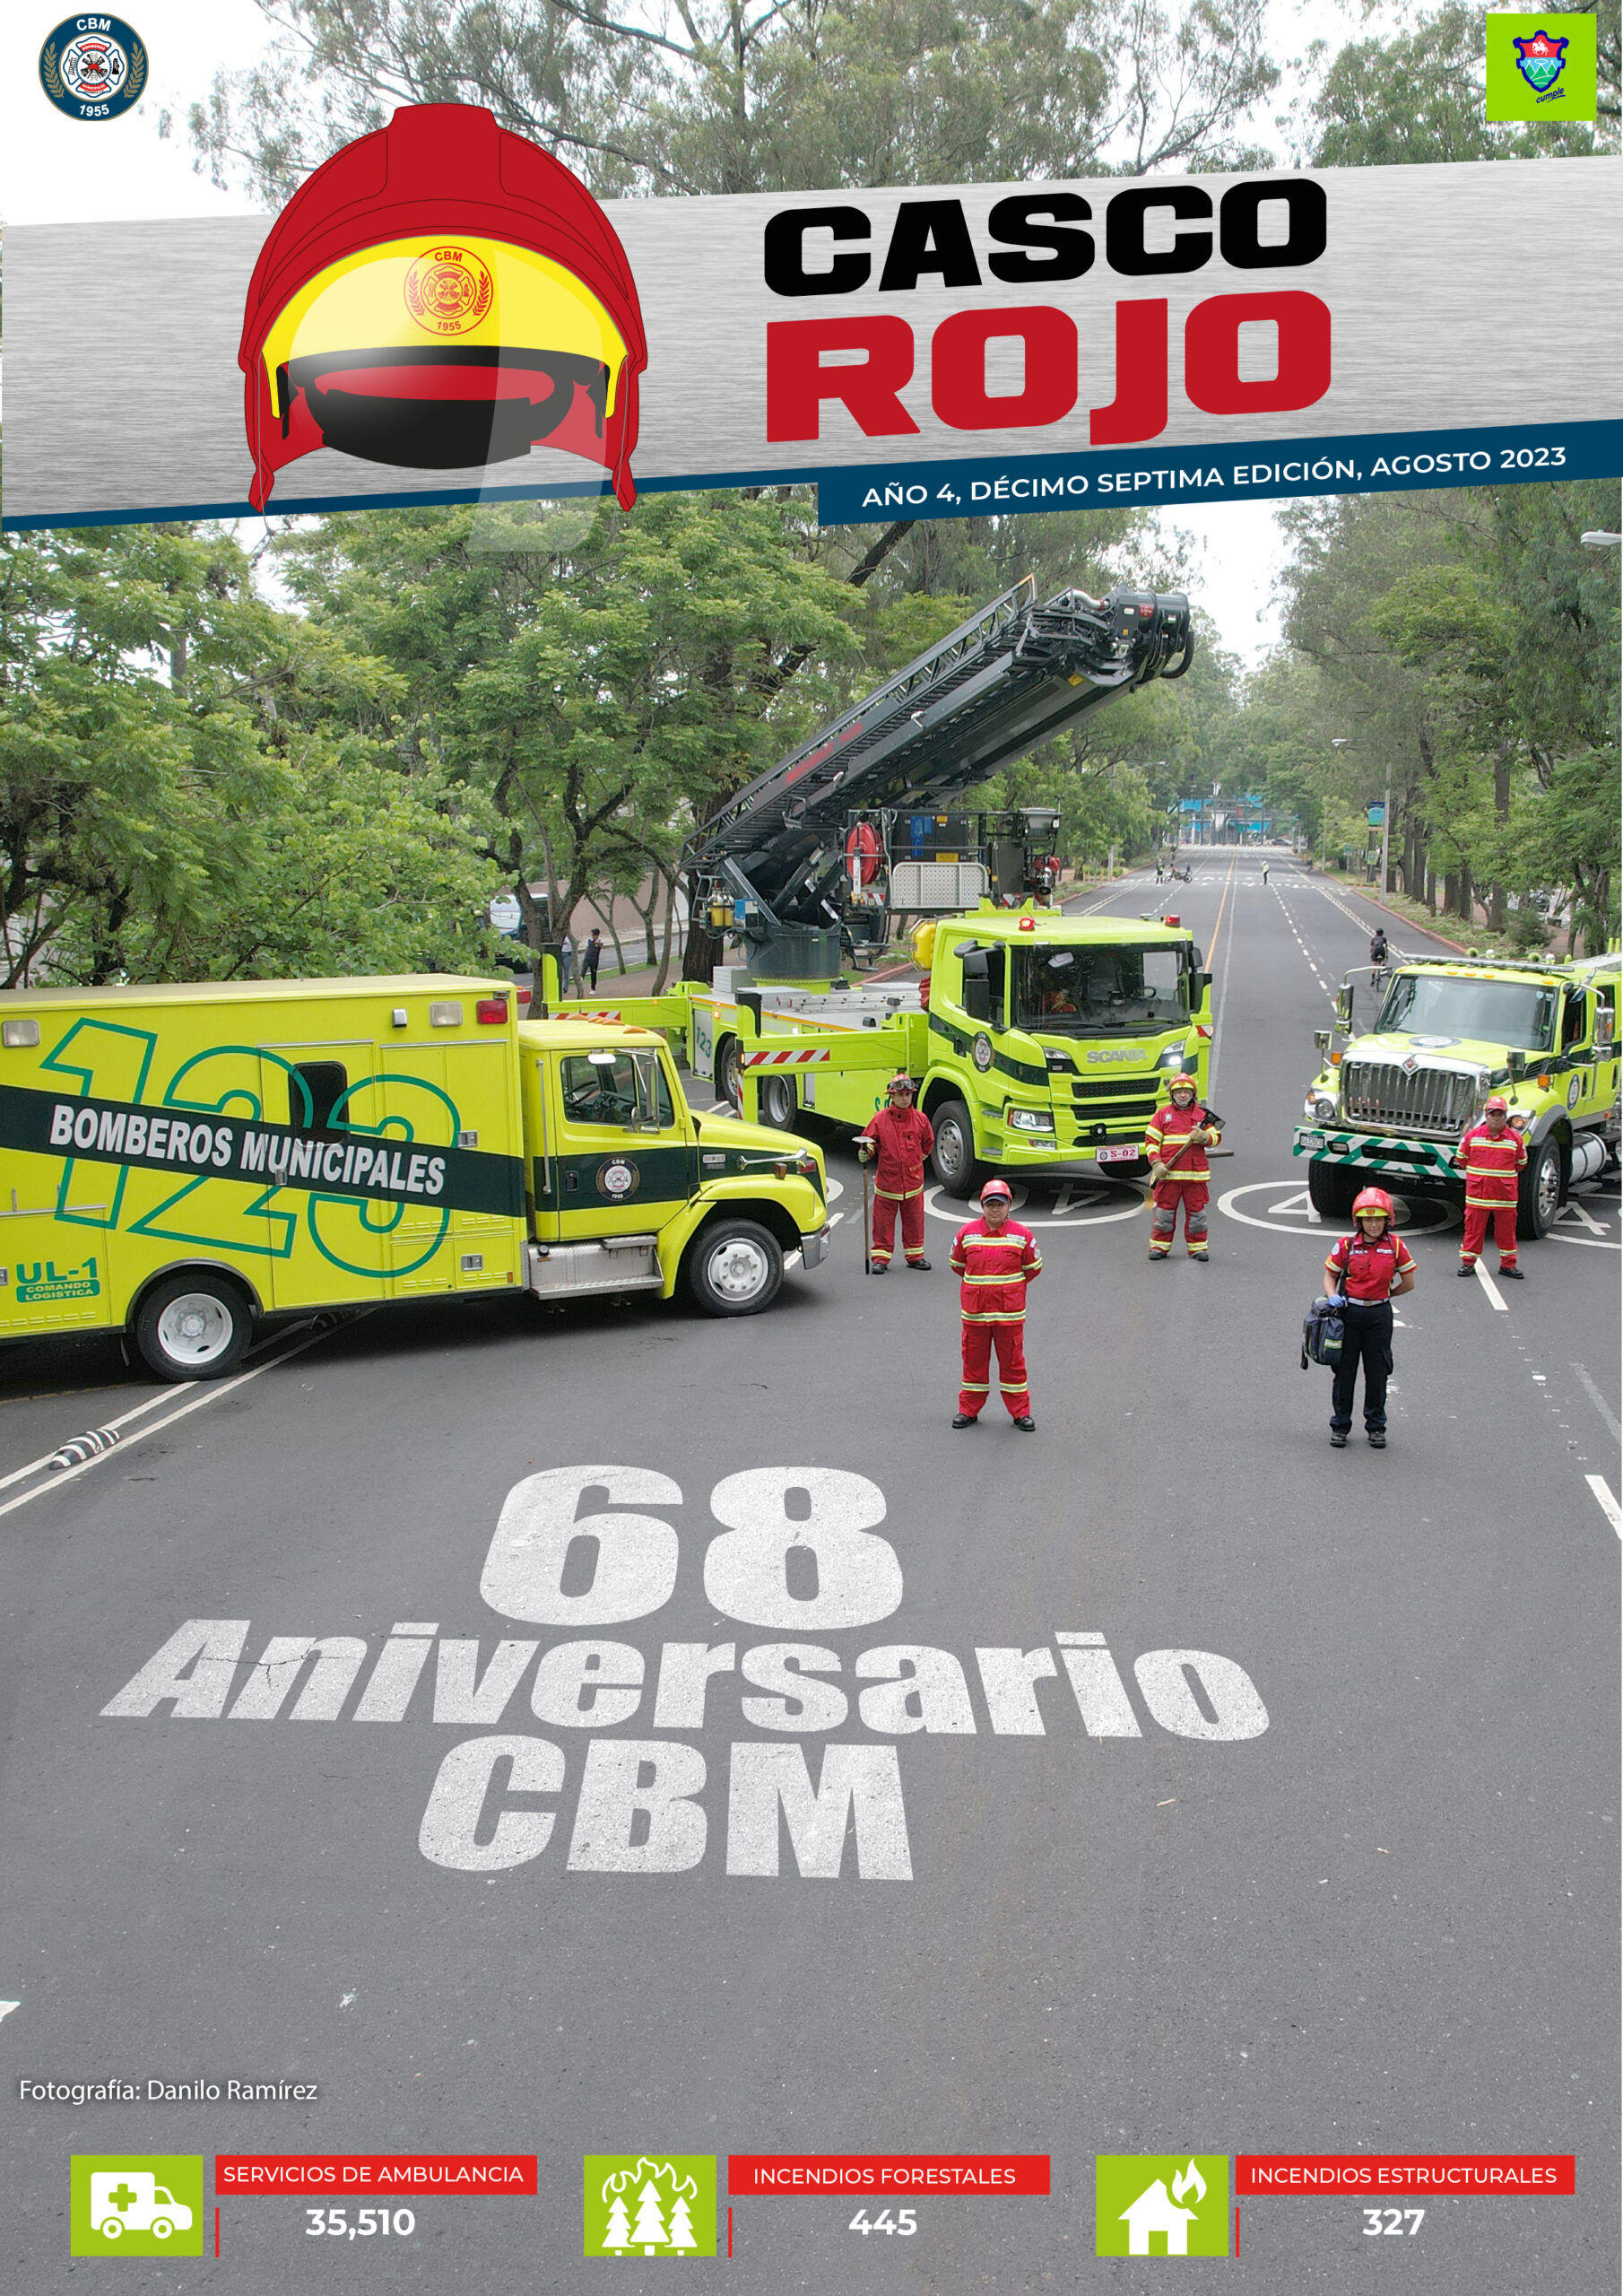 Revista Casco Rojo Bomberos Municipales – Décima Séptima Edición